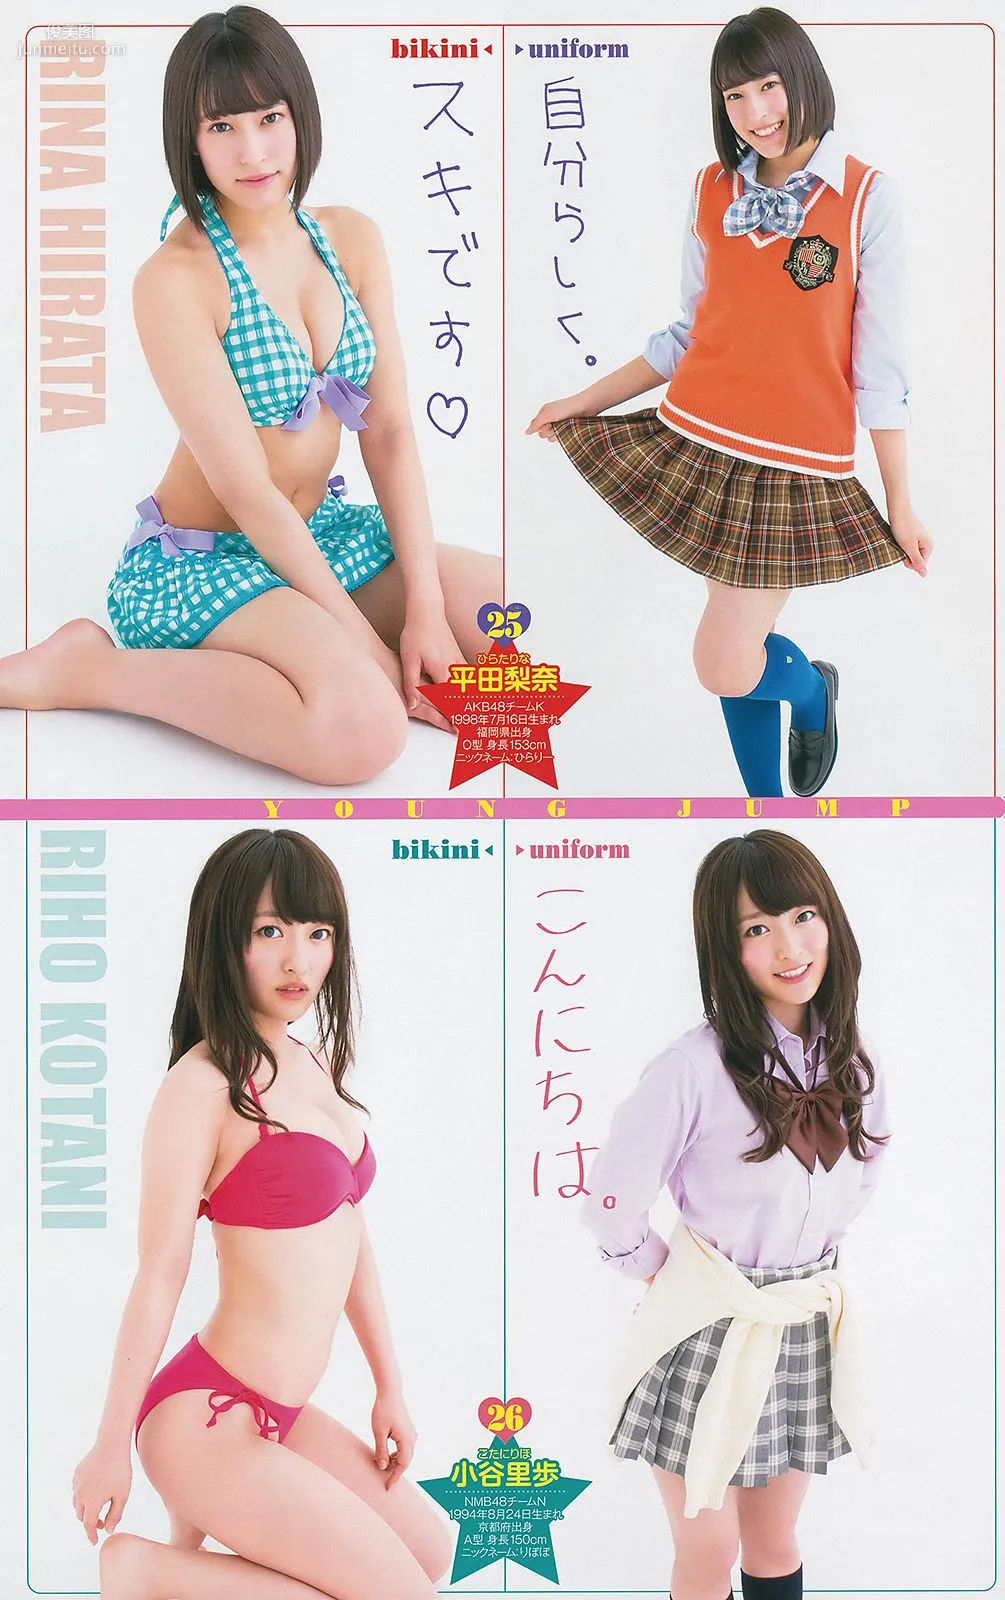 最上もが 48グループ 横山ルリカ [Weekly Young Jump] 2014年No.19 写真杂志17